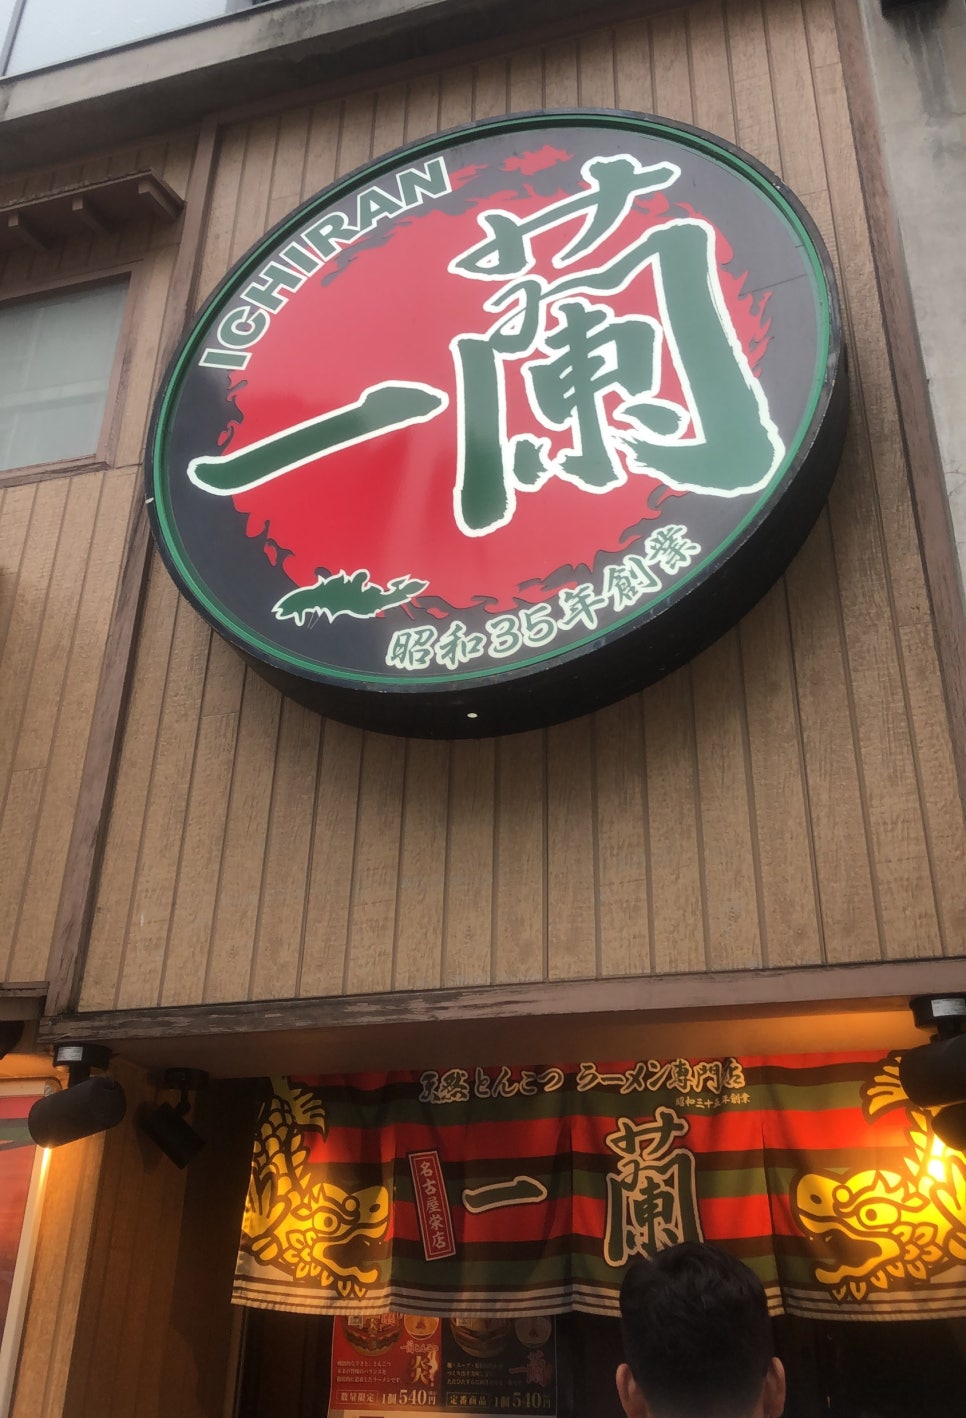 나고야 사카에 맛집 이치란 라멘 나고야사카에점 후기